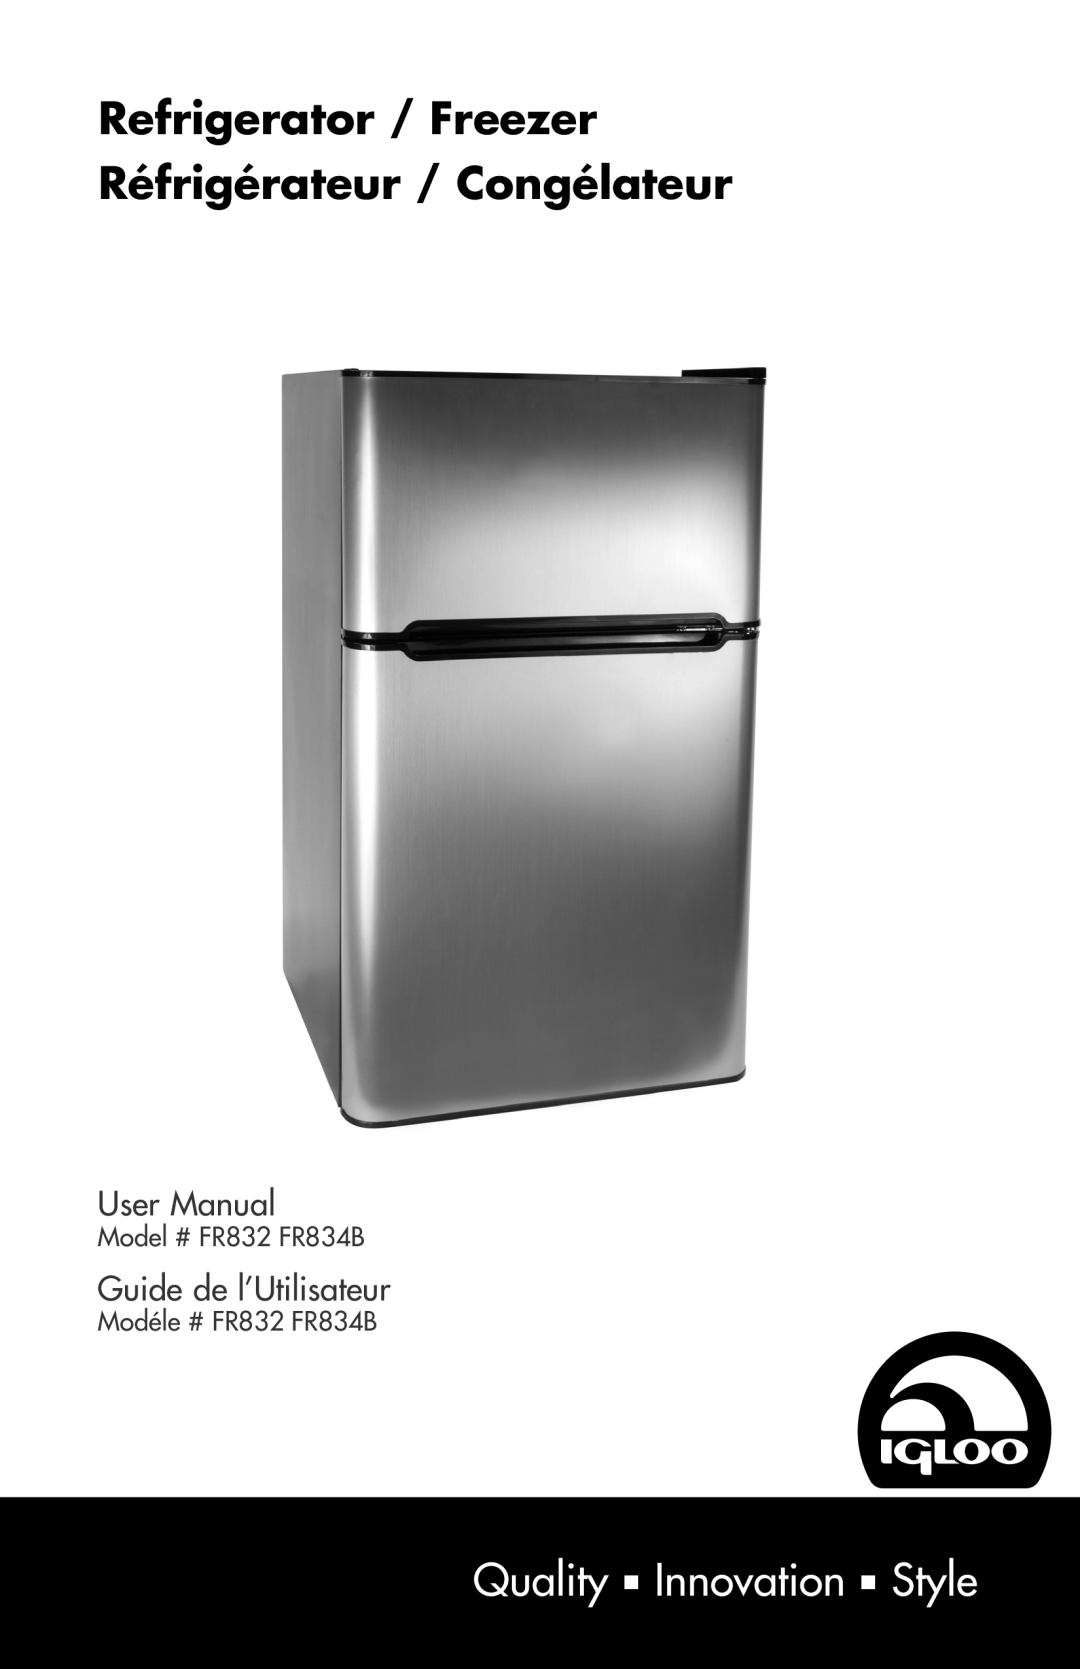 Igloo user manual Quality n Innovation n Style, Guide de l’Utilisateur, Model # FR832 FR834B, Modéle # FR832 FR834B 